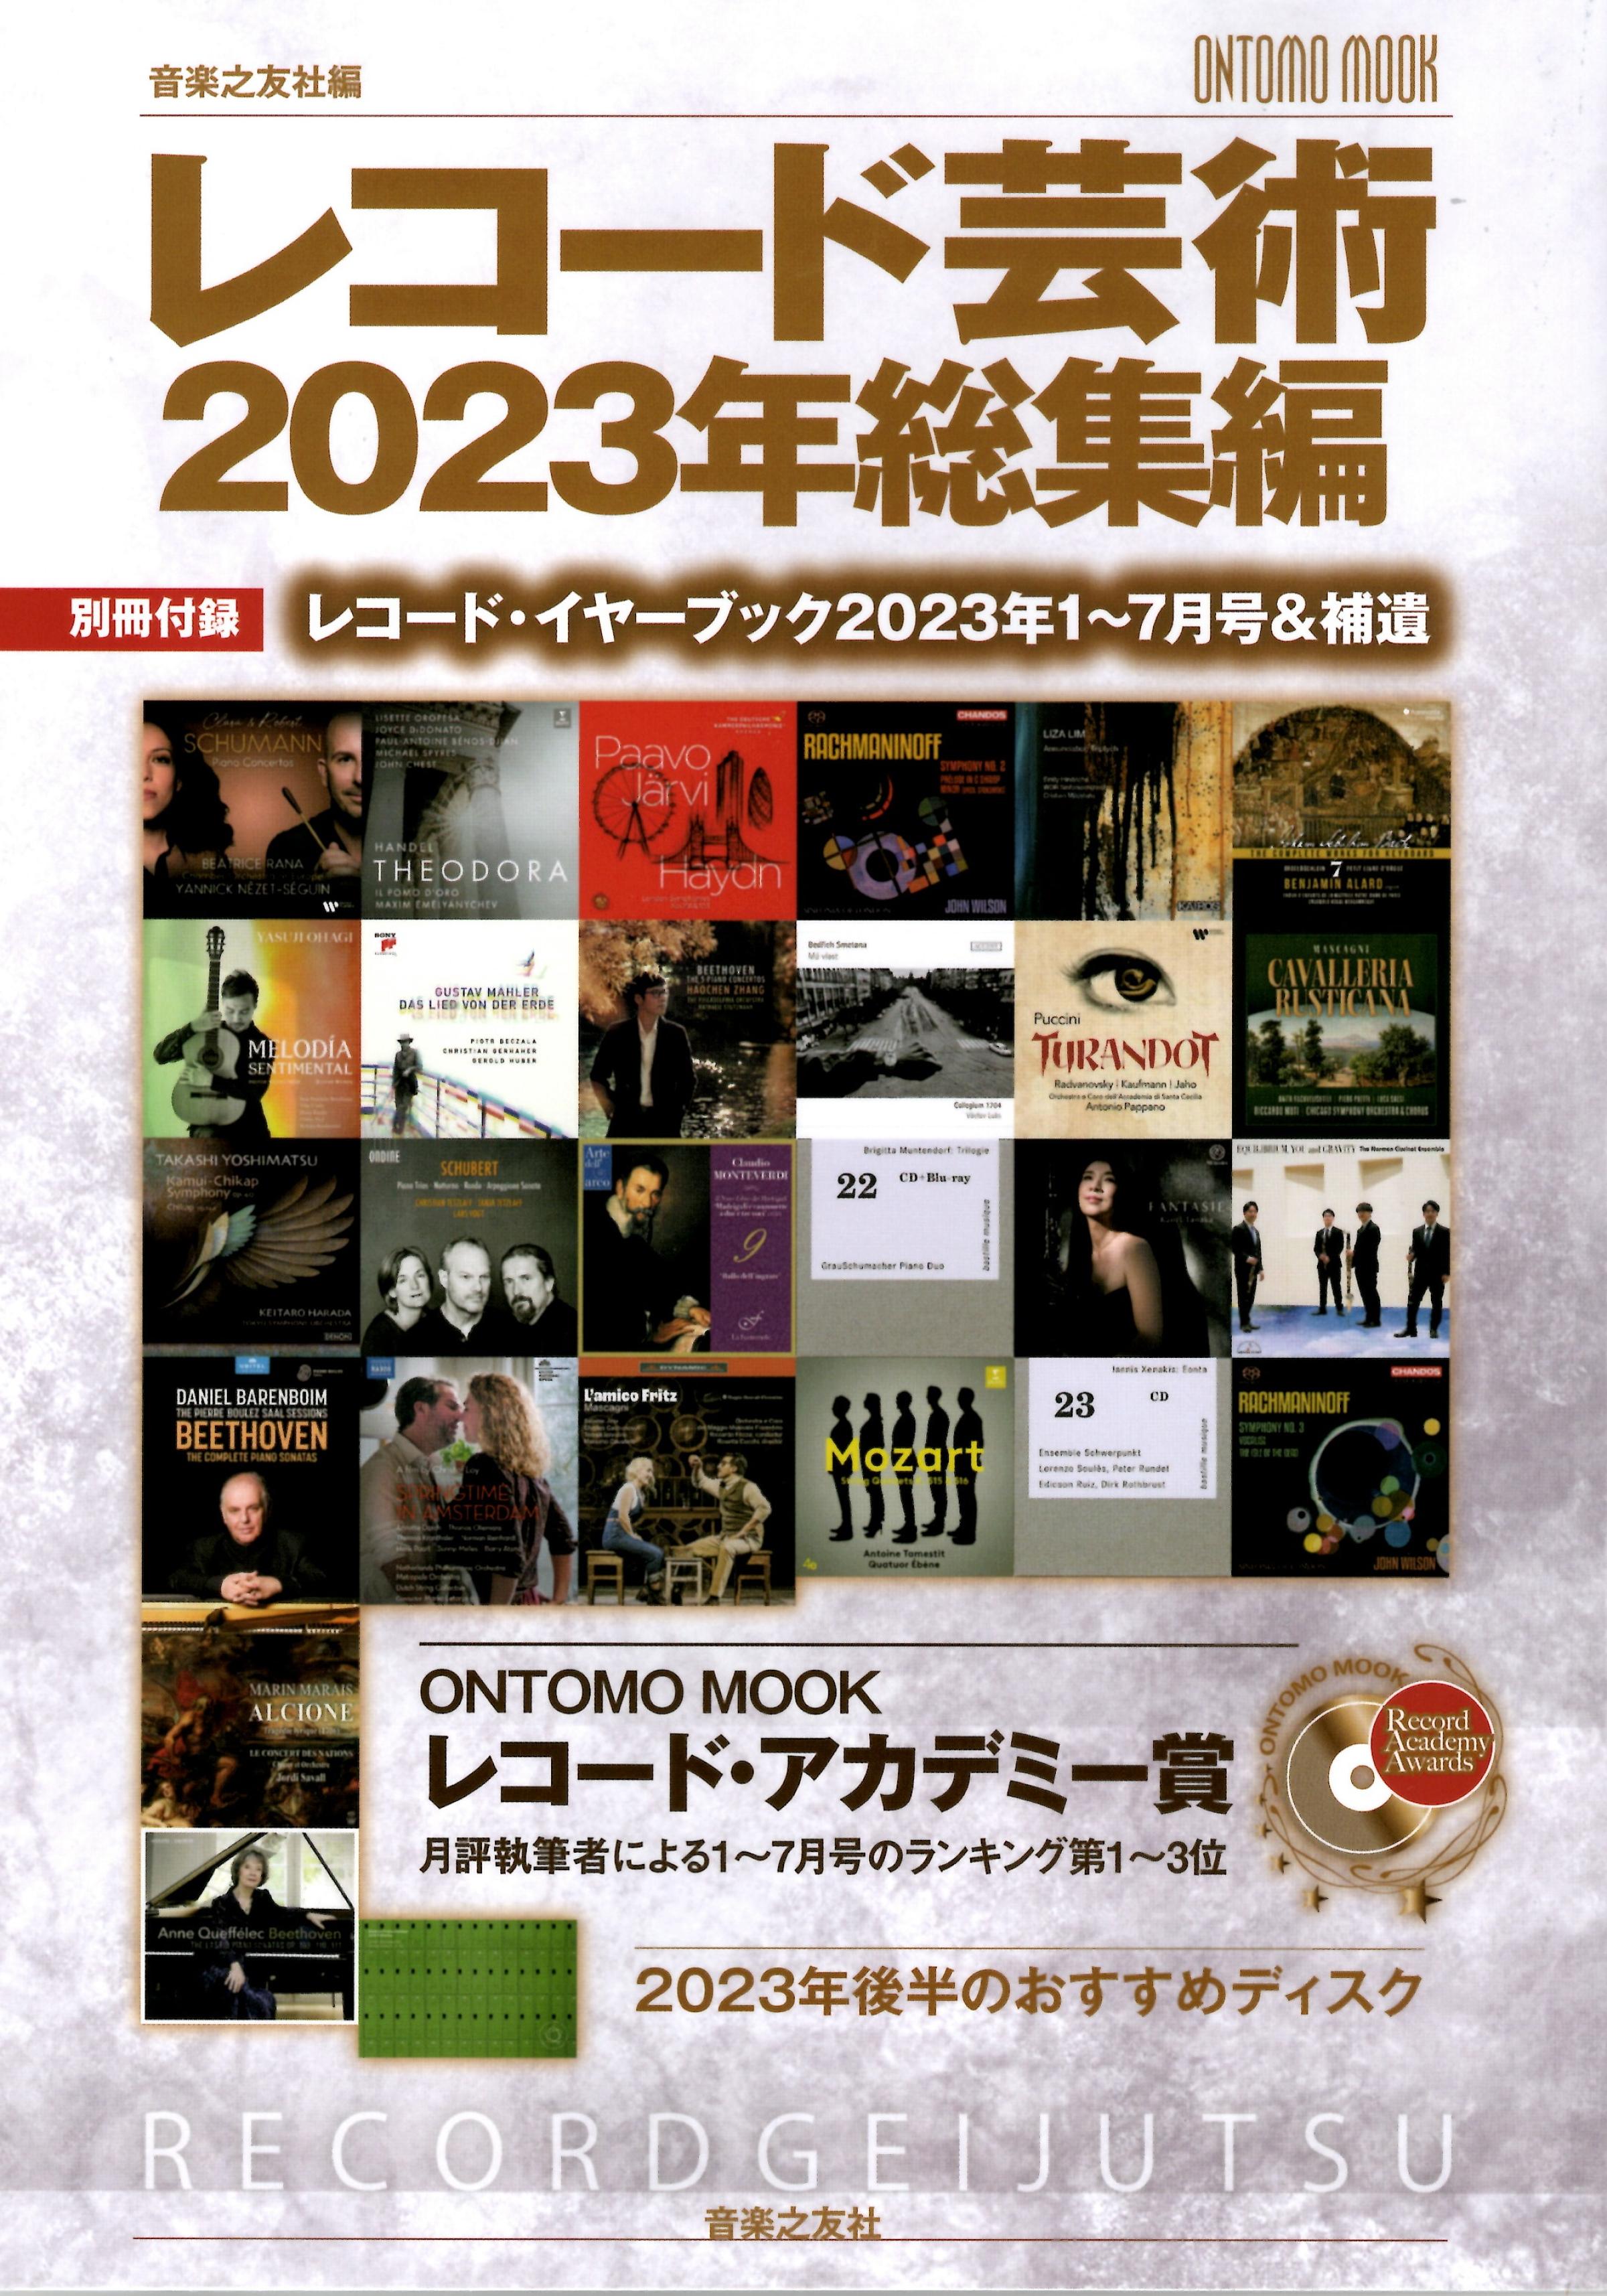 小宮正安教授が共同執筆者を務めた『レコード芸術2023年総集編』が出版されました。